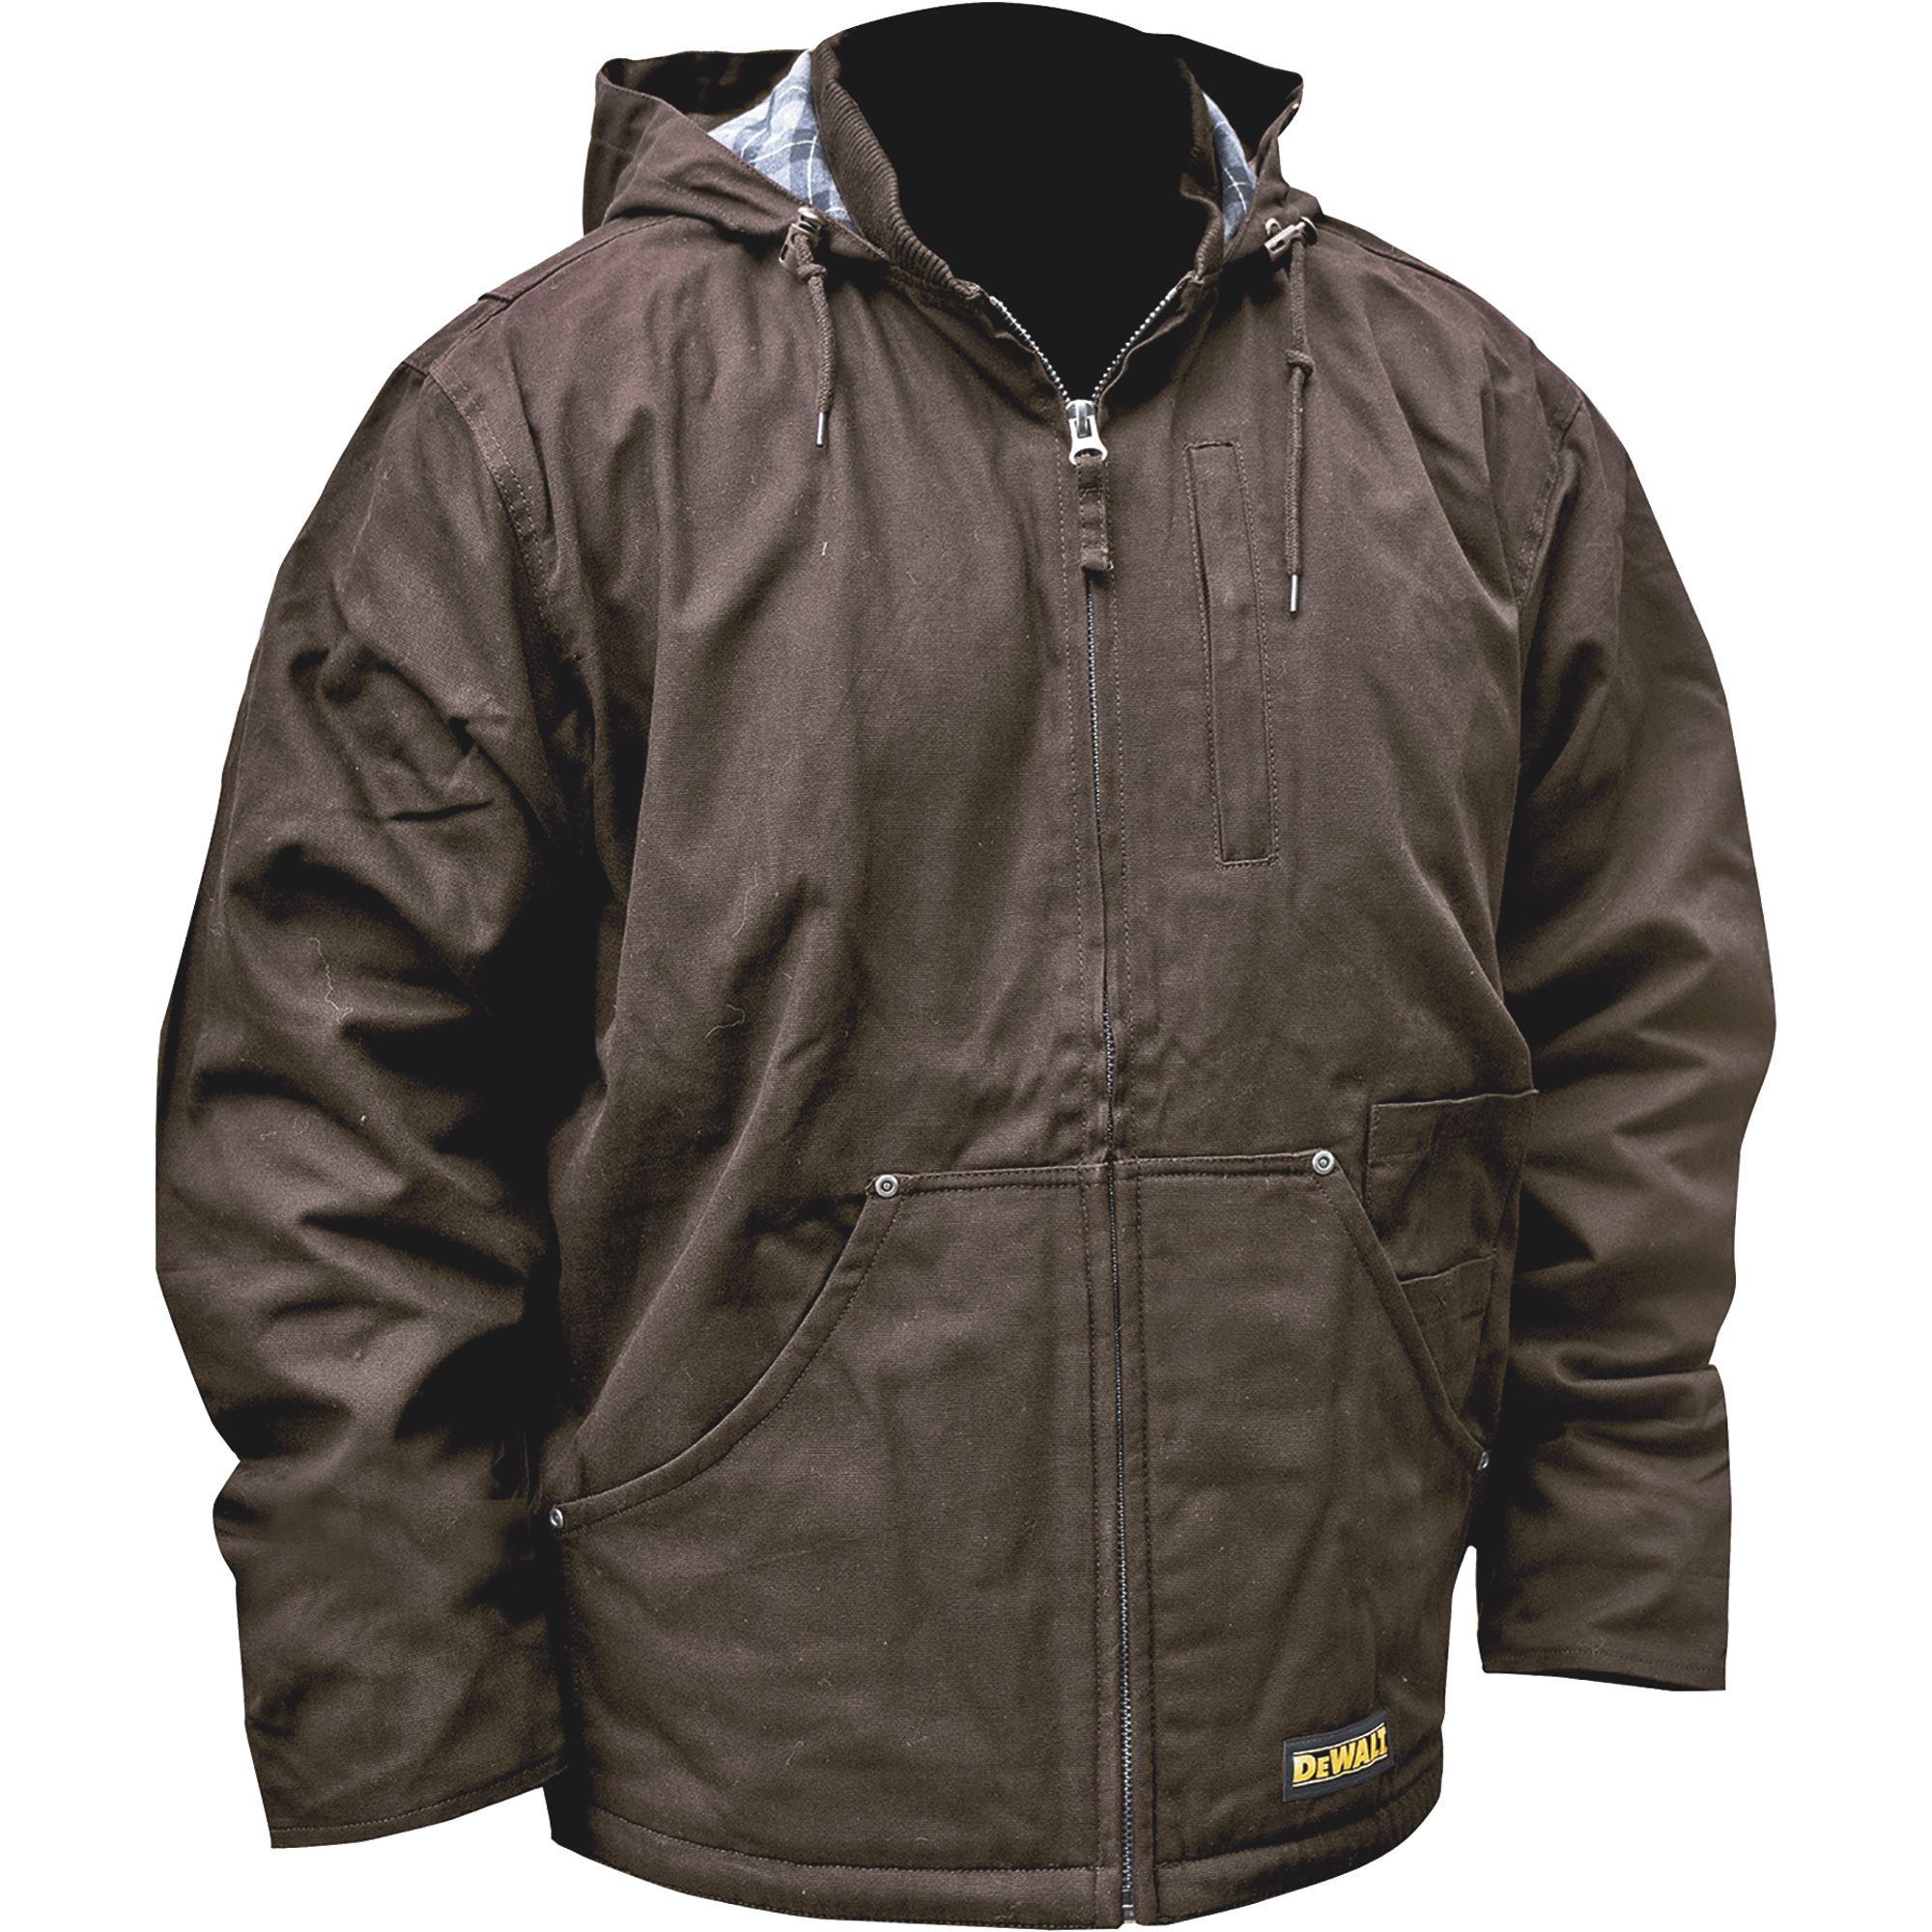 DEWALT Men's Heated Heavy-Duty Hooded Duck Jacket with Fleece Lining â Tobacco, 2XL, Model DCHJ076AT1D-2X